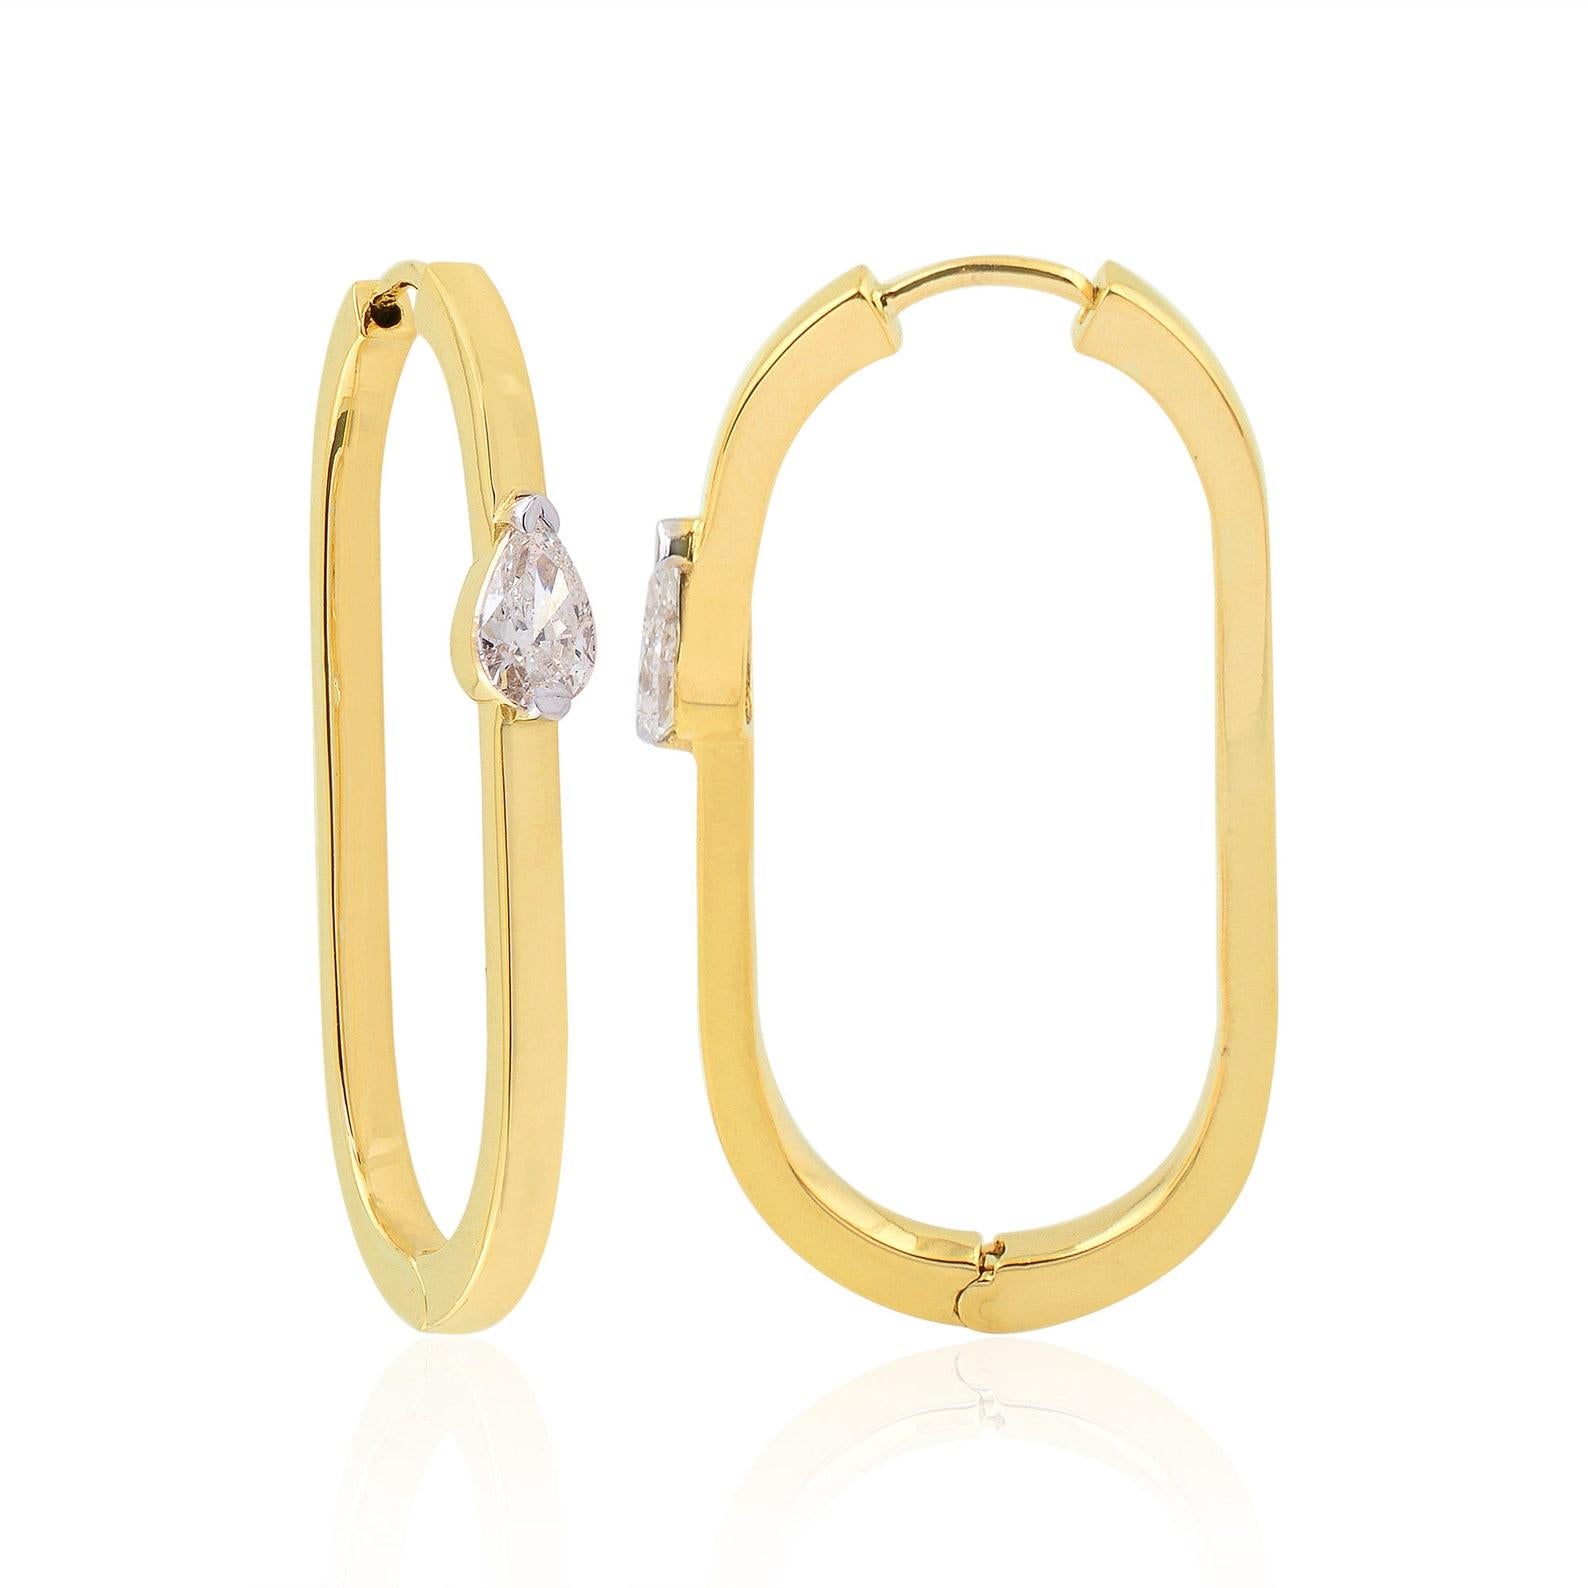 Diese wunderschönen Ohrringe sind aus 14-karätigem Gold gegossen und von Hand mit 0,82 Karat Diamanten besetzt. 

FOLLOW MEGHNA JEWELS Storefront, um die neueste Kollektion und exklusive Stücke zu sehen. Meghna Jewels ist stolz darauf, Top-Anbieter